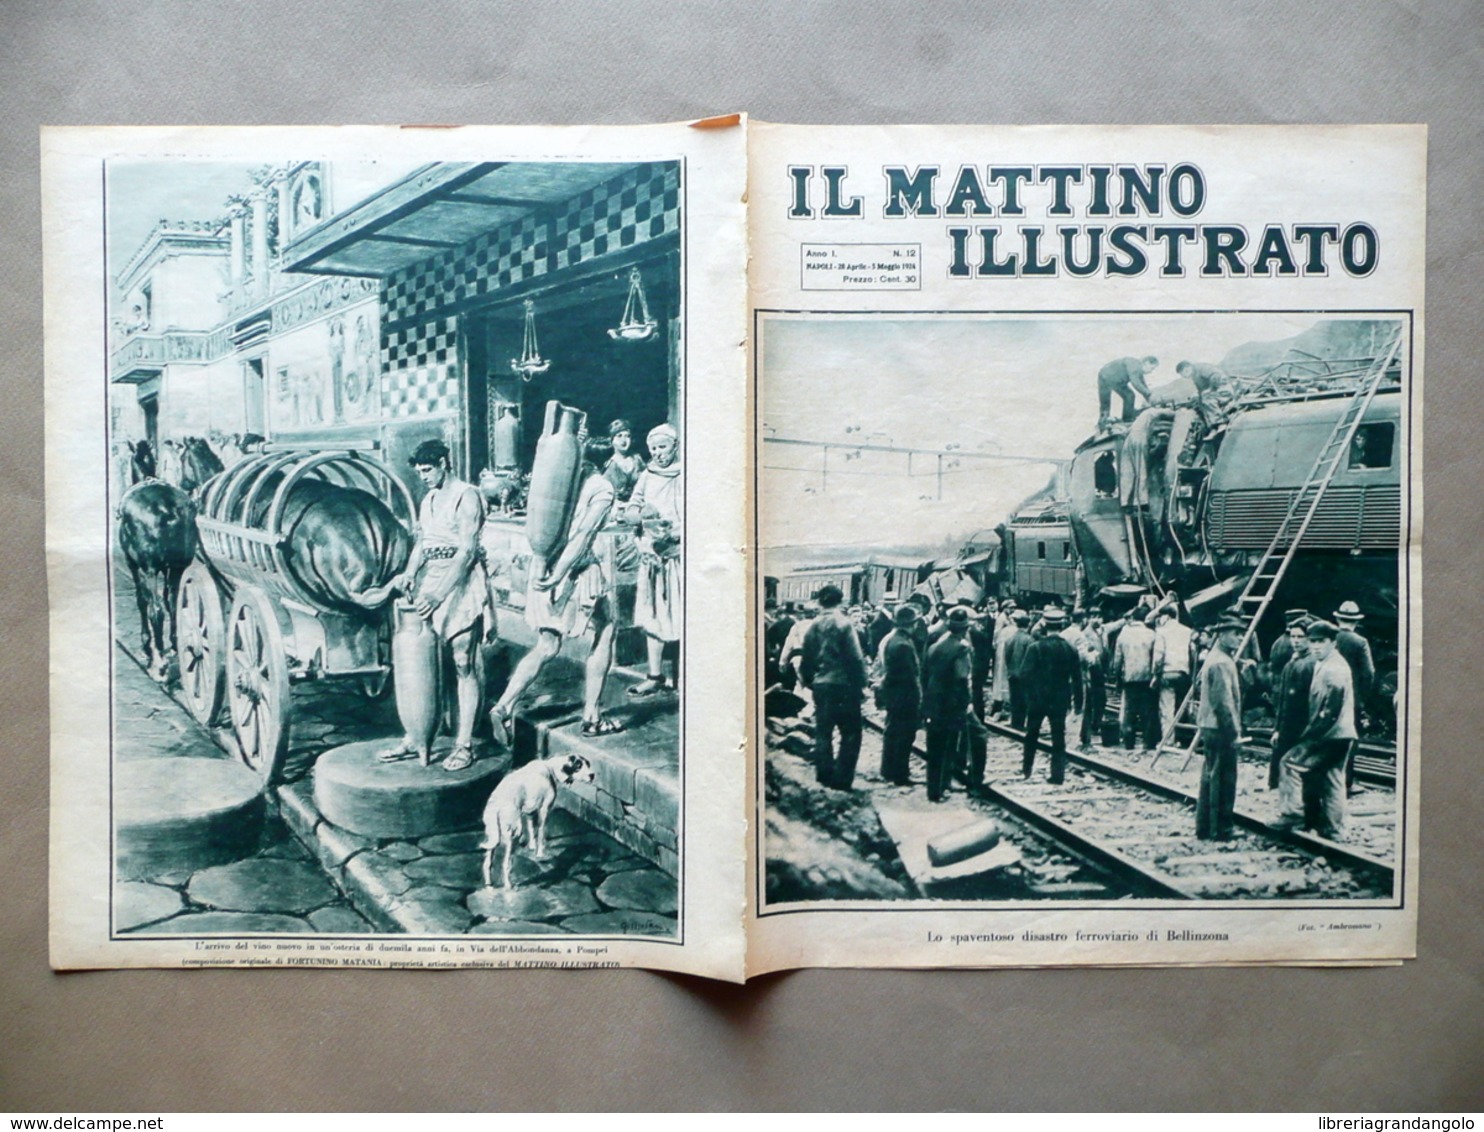 Disastro Ferroviario Bellinzona Nuvolari GP Tigullio Il Mattino Illustrato 1924 - Non Classificati